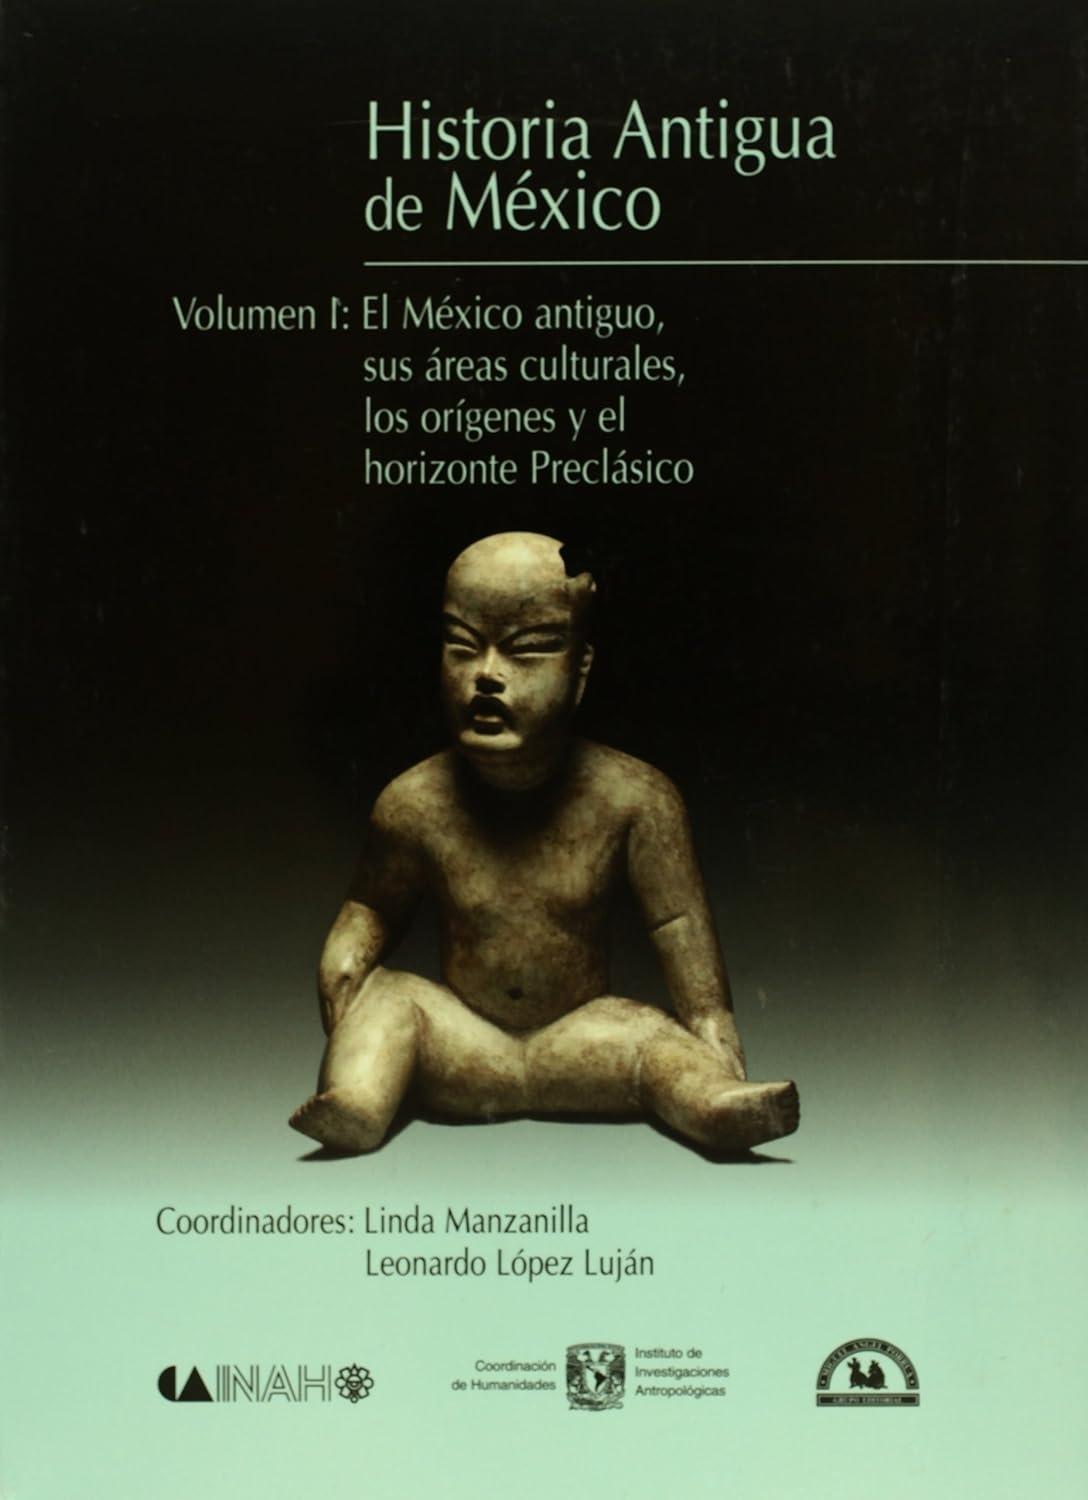 Historia Antigua de Mexico - 1 "El México antiguo, sus áreas culturales, los orígenes y el horizonte Preclásico". 